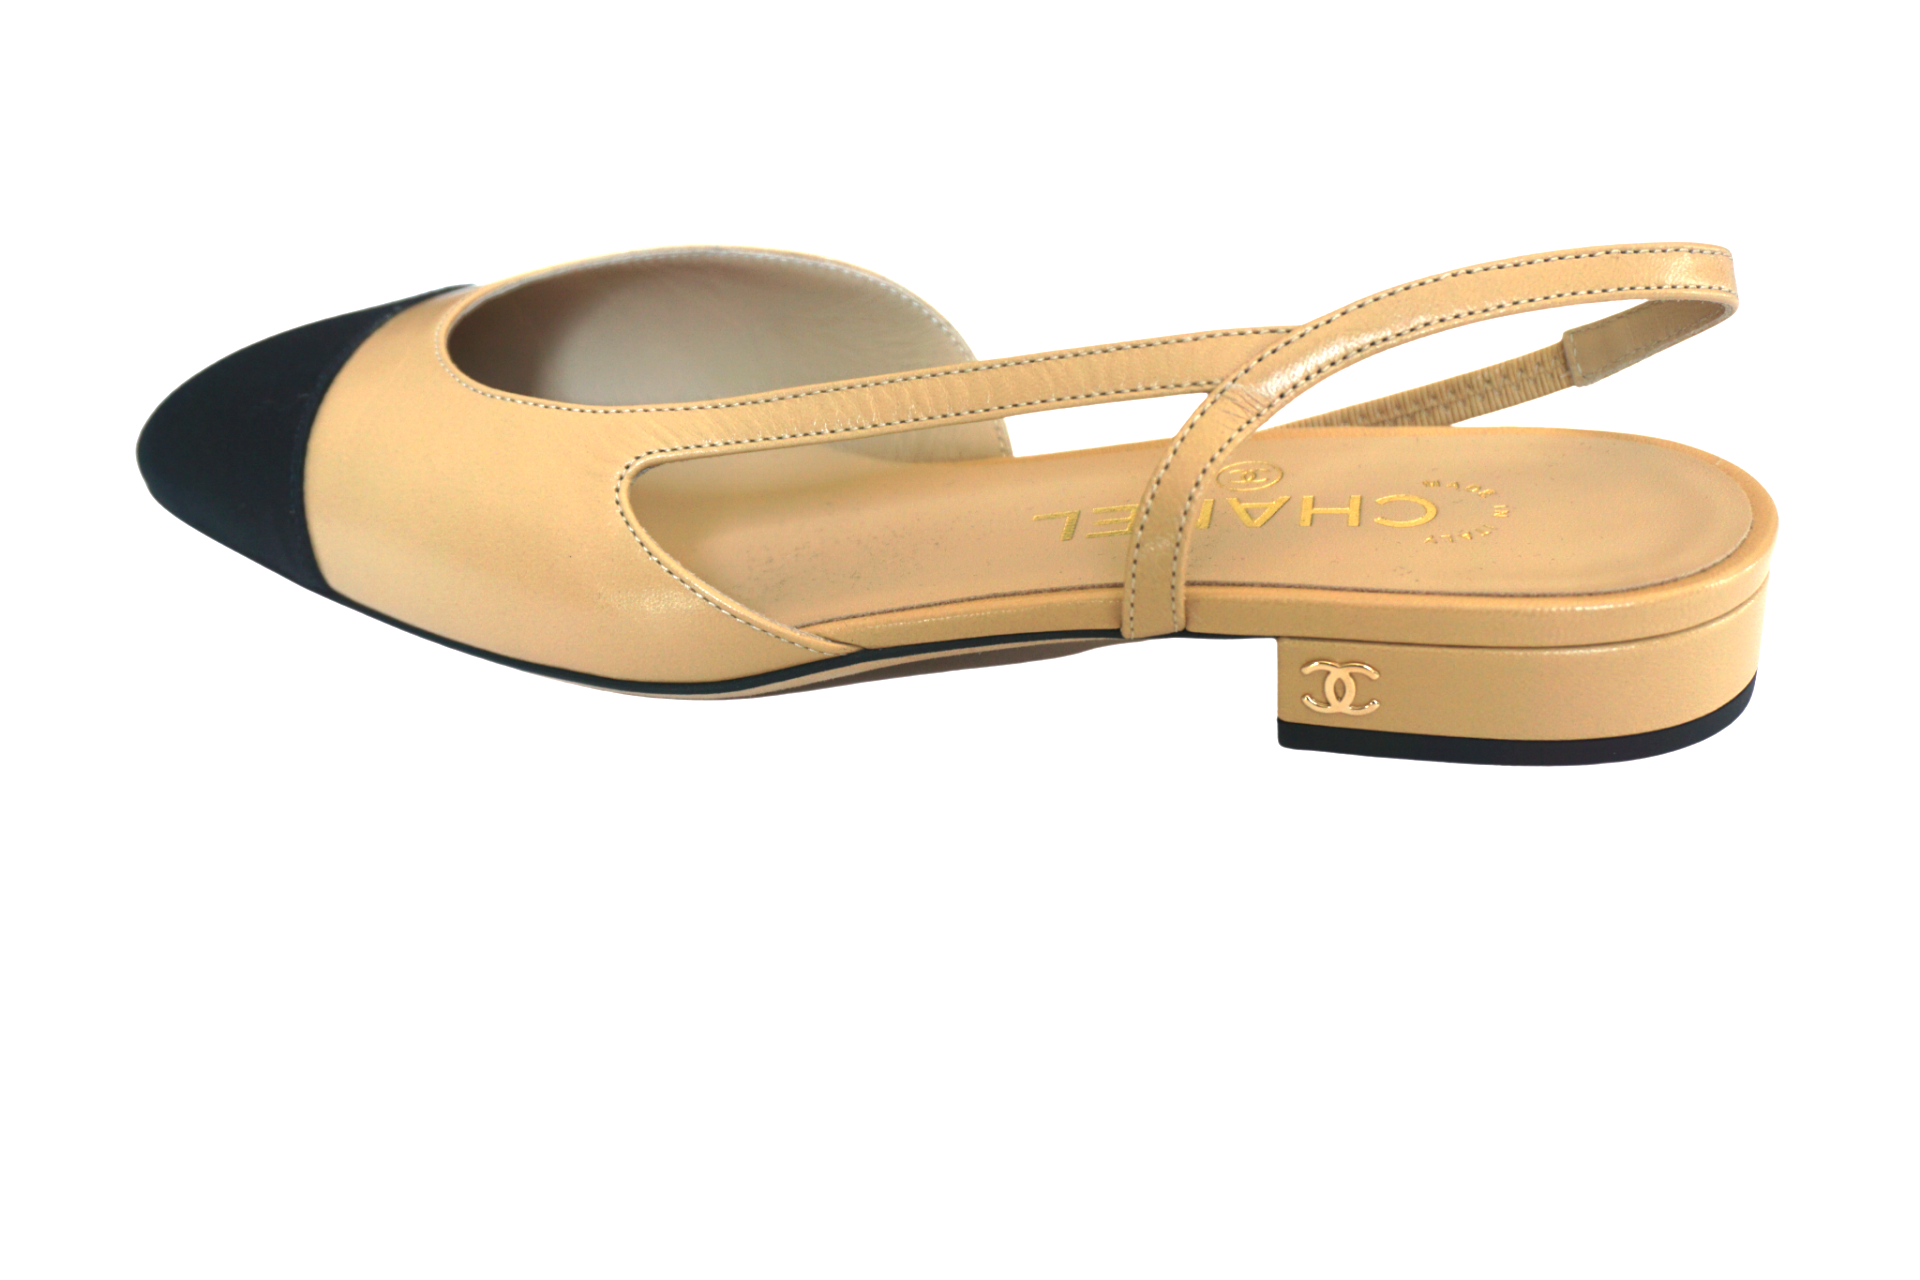 Chanel - Strappy Sandal Open Toe Heels - Satin Beige Black - CC